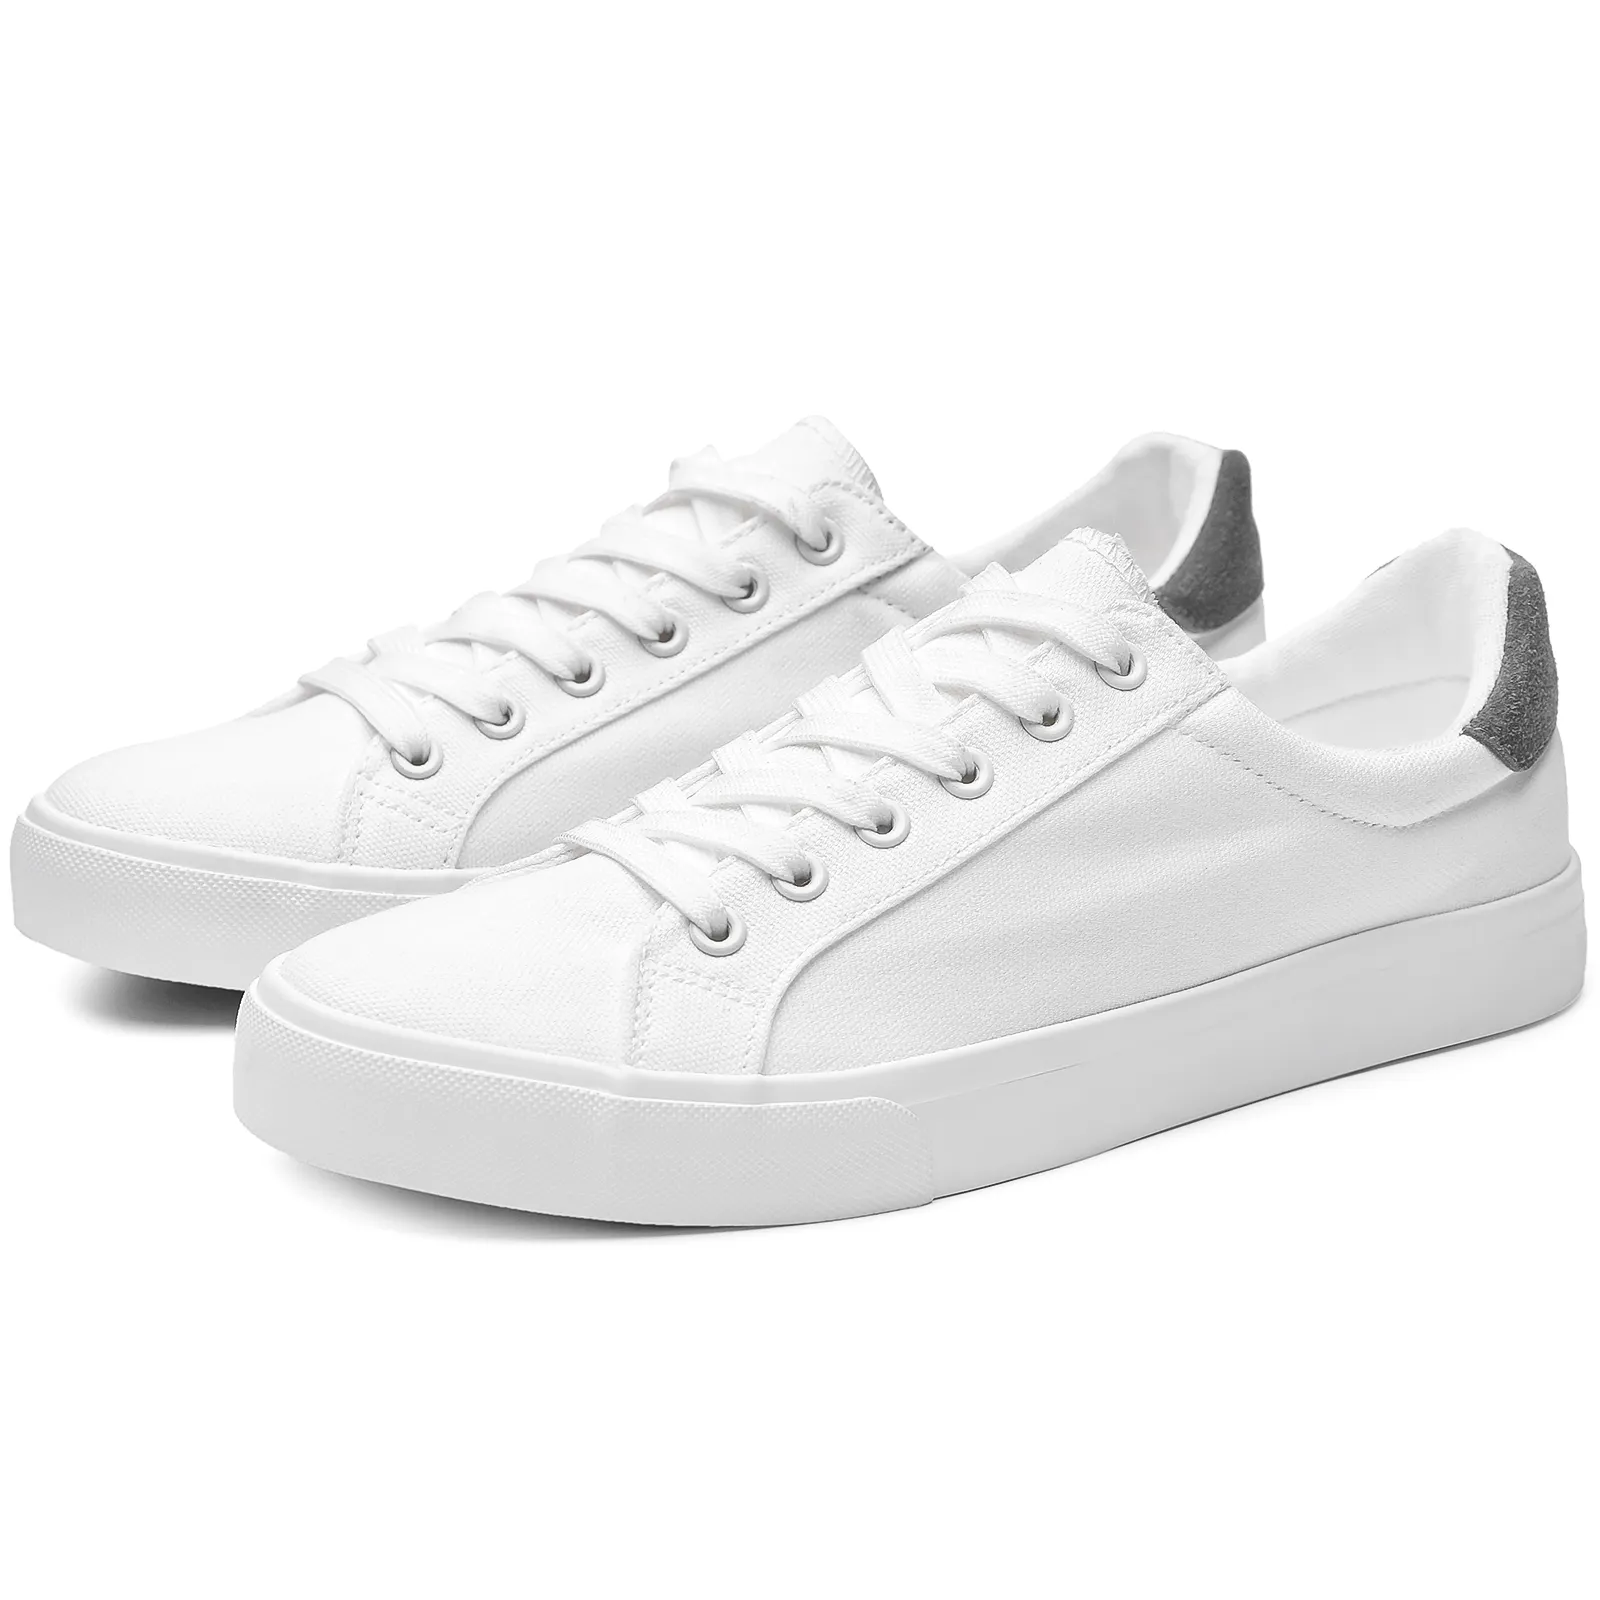 Gran oferta XRH, zapatos de lona de moda blancos informales para hombre de tenis en stock de tamaño 9,5 para hombre, nuevos estilos